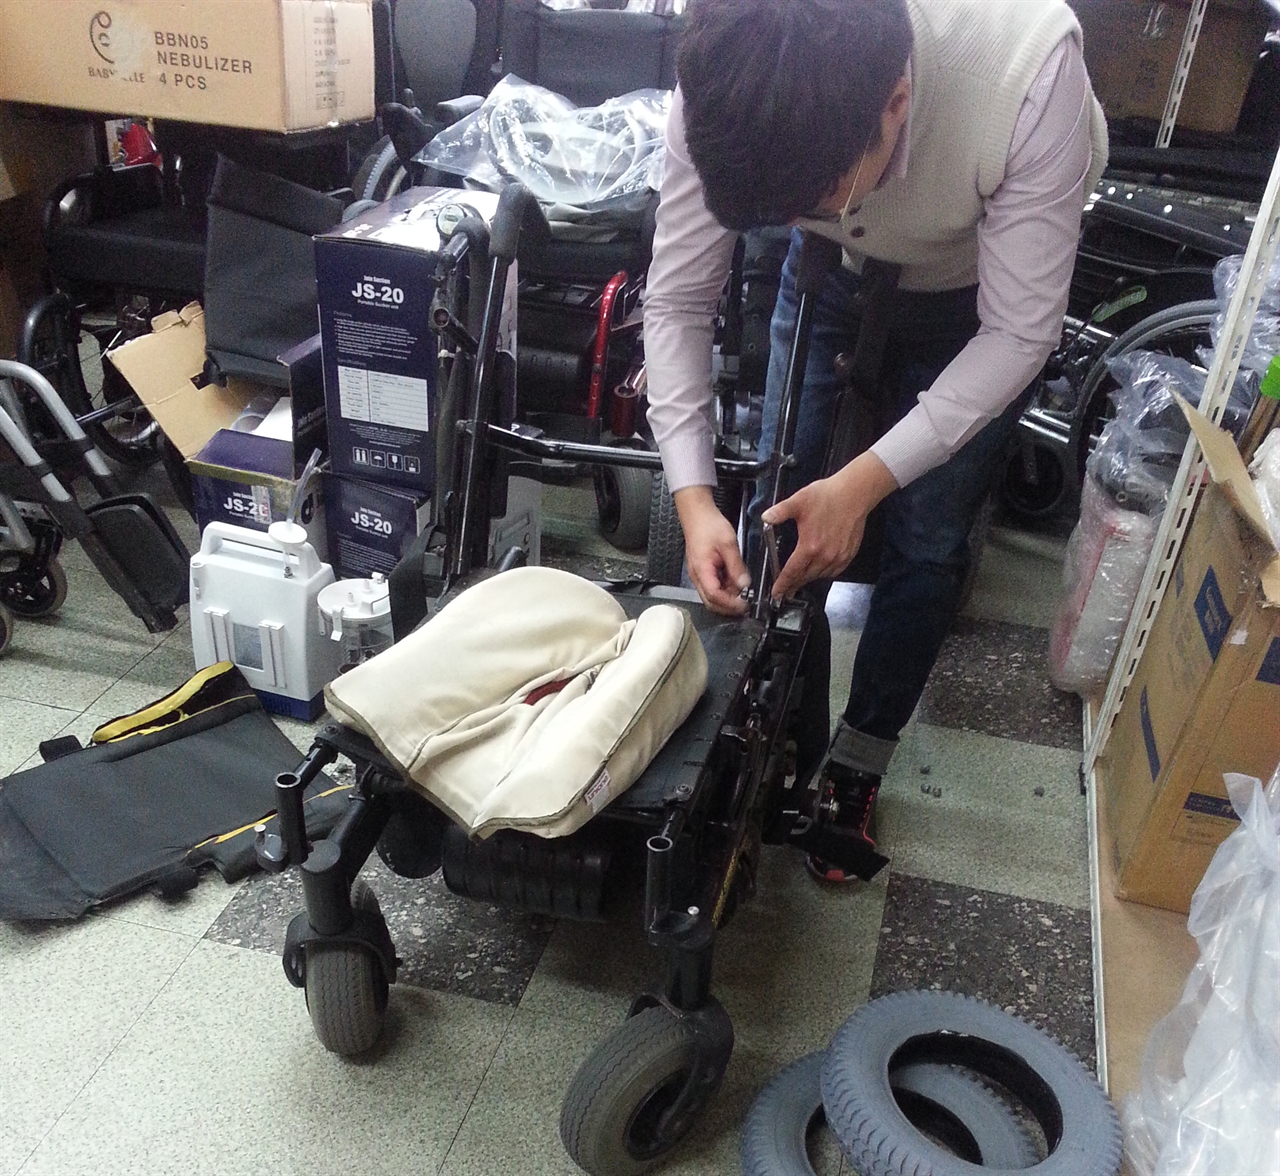 장애인의 상황에 맞게 휠체어를 준비하고 있는 모습